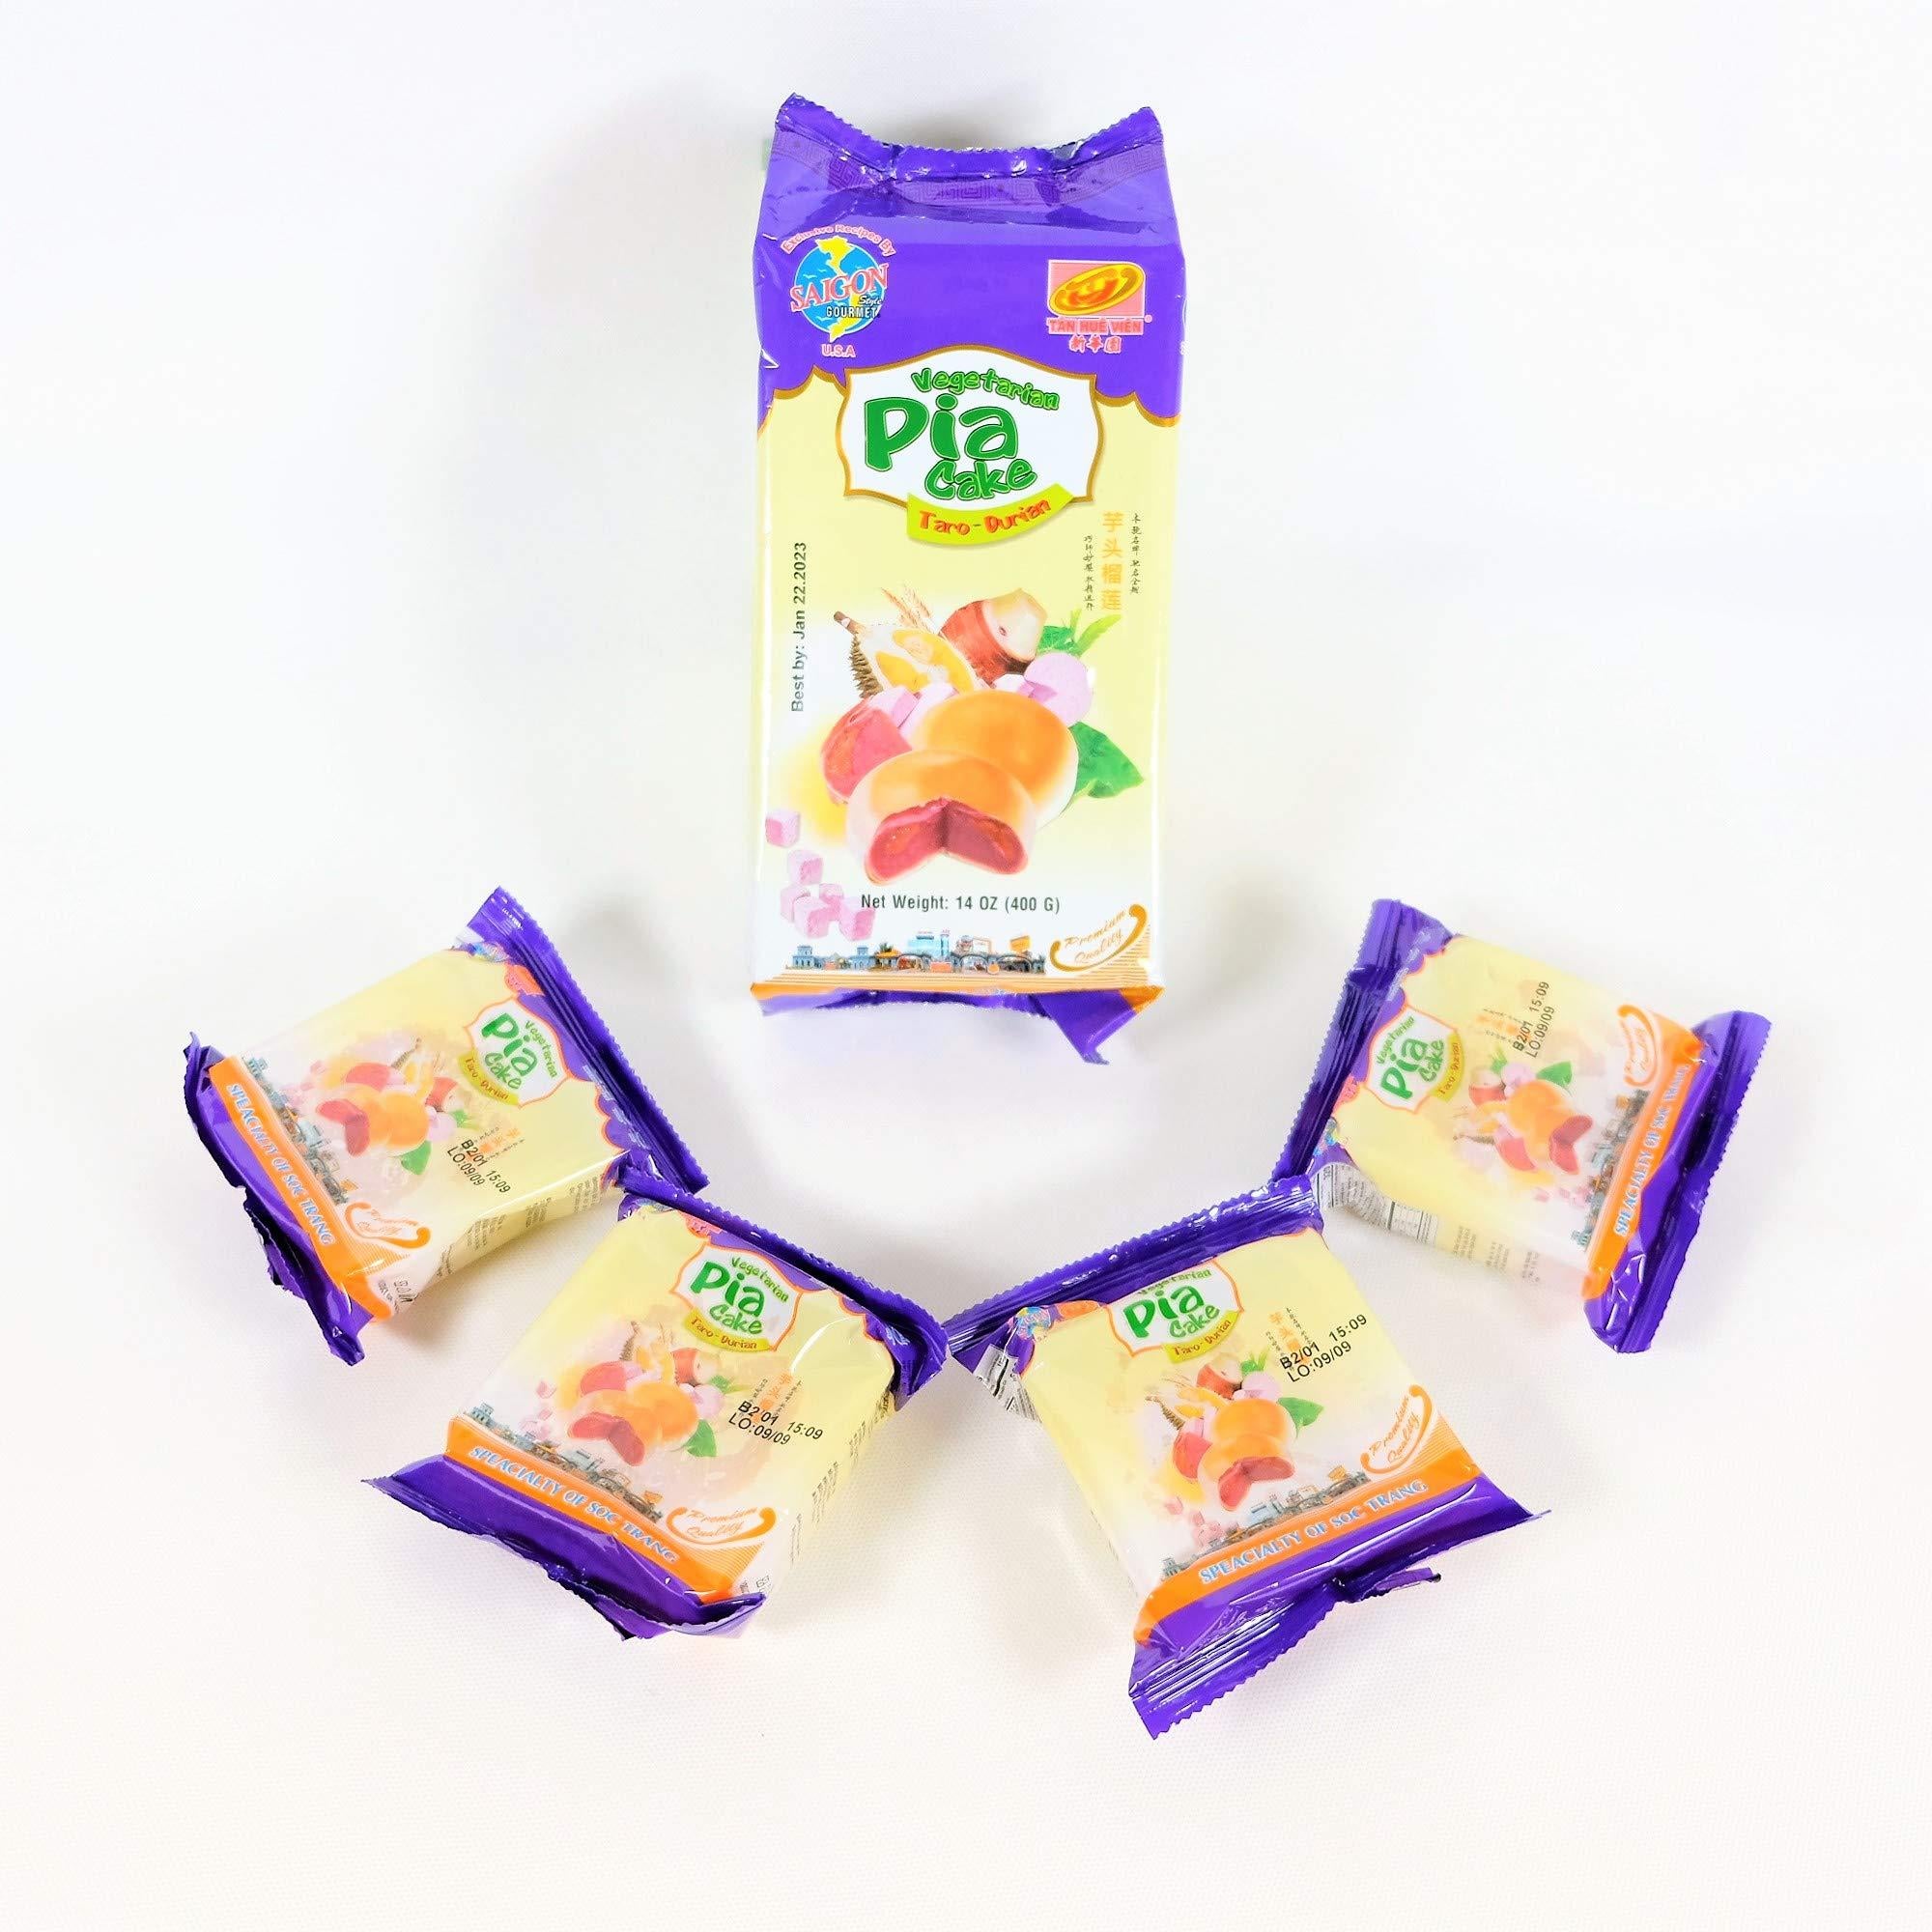 Banh Pia Pia Cake Hopia Cake Tan Hue Vien - Saigon Gourmet, Taro & Durian Flavors, 14 Oz, [Pack of 1]